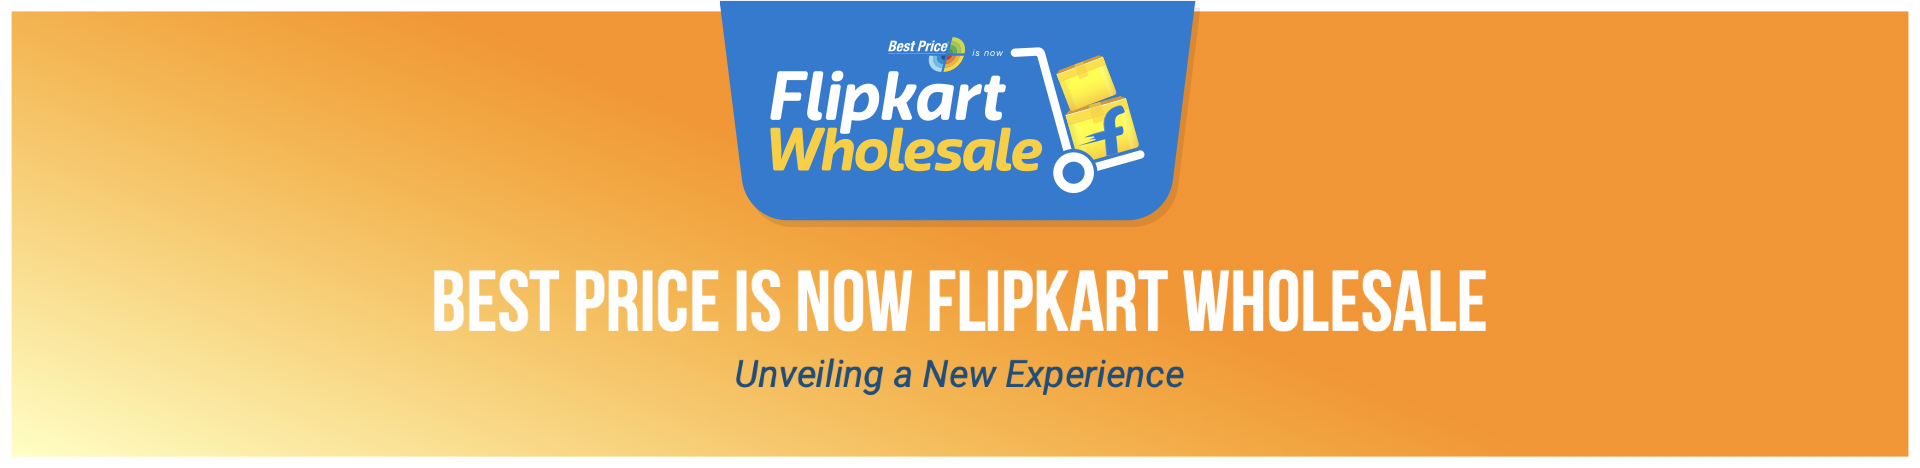 BestPrice is now Flipkart Wholesale